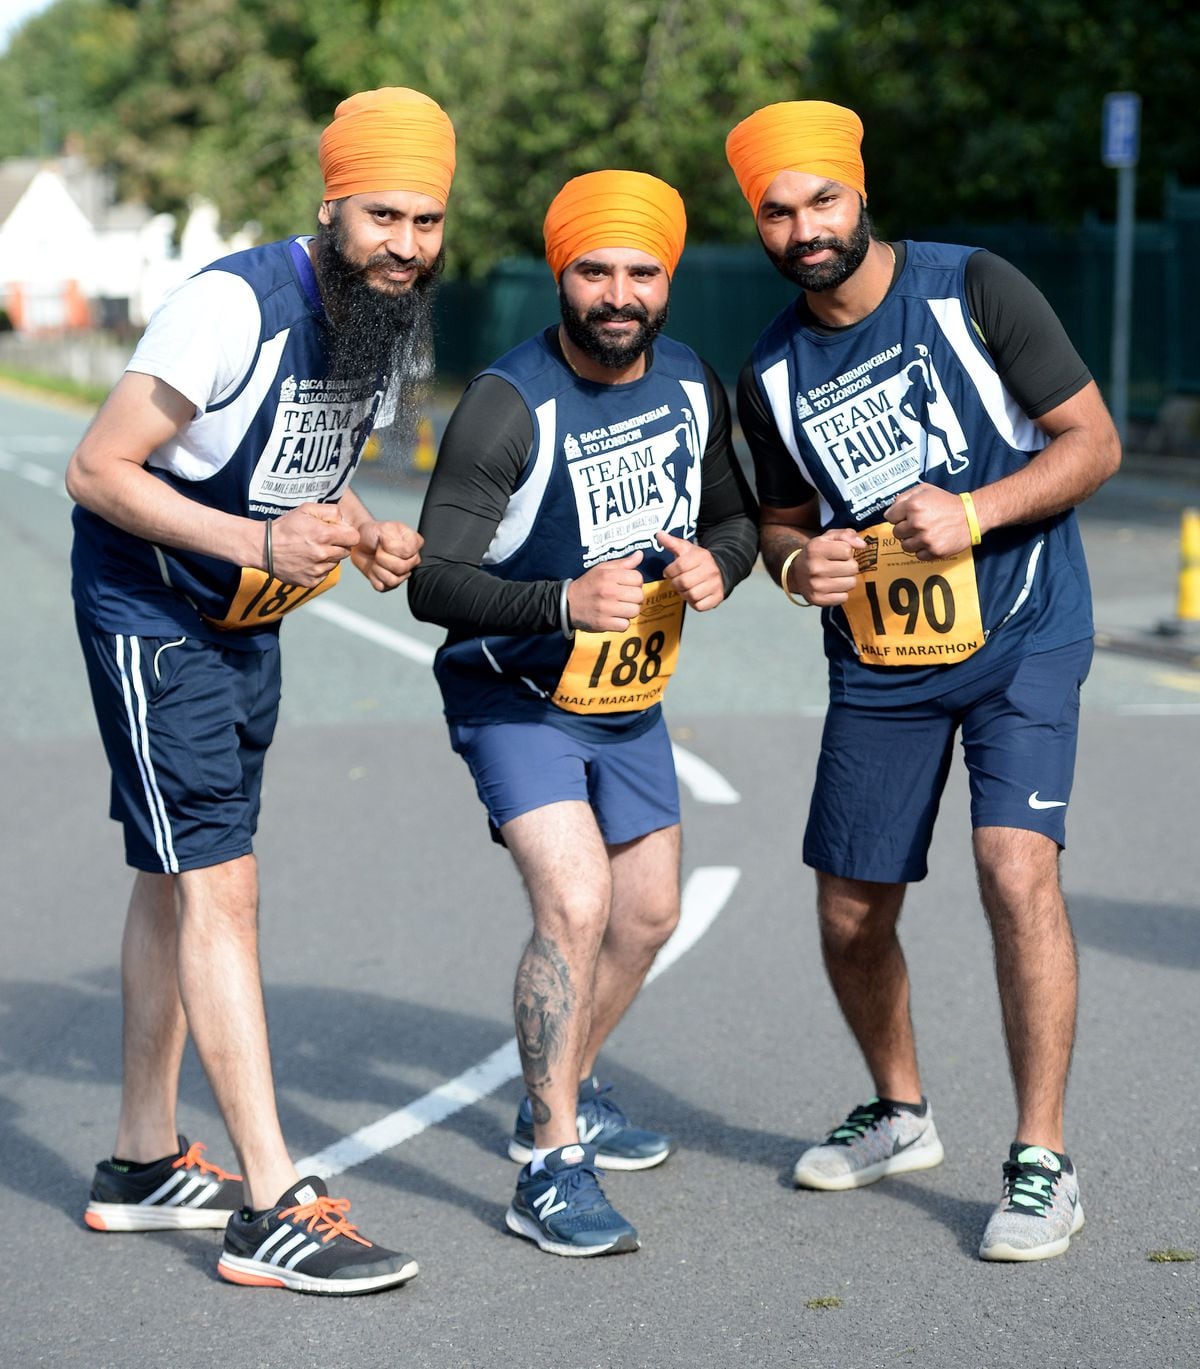 Kuldip Singh, Preetkanwal Singh and Gurmit Singh who travelled from London for the run